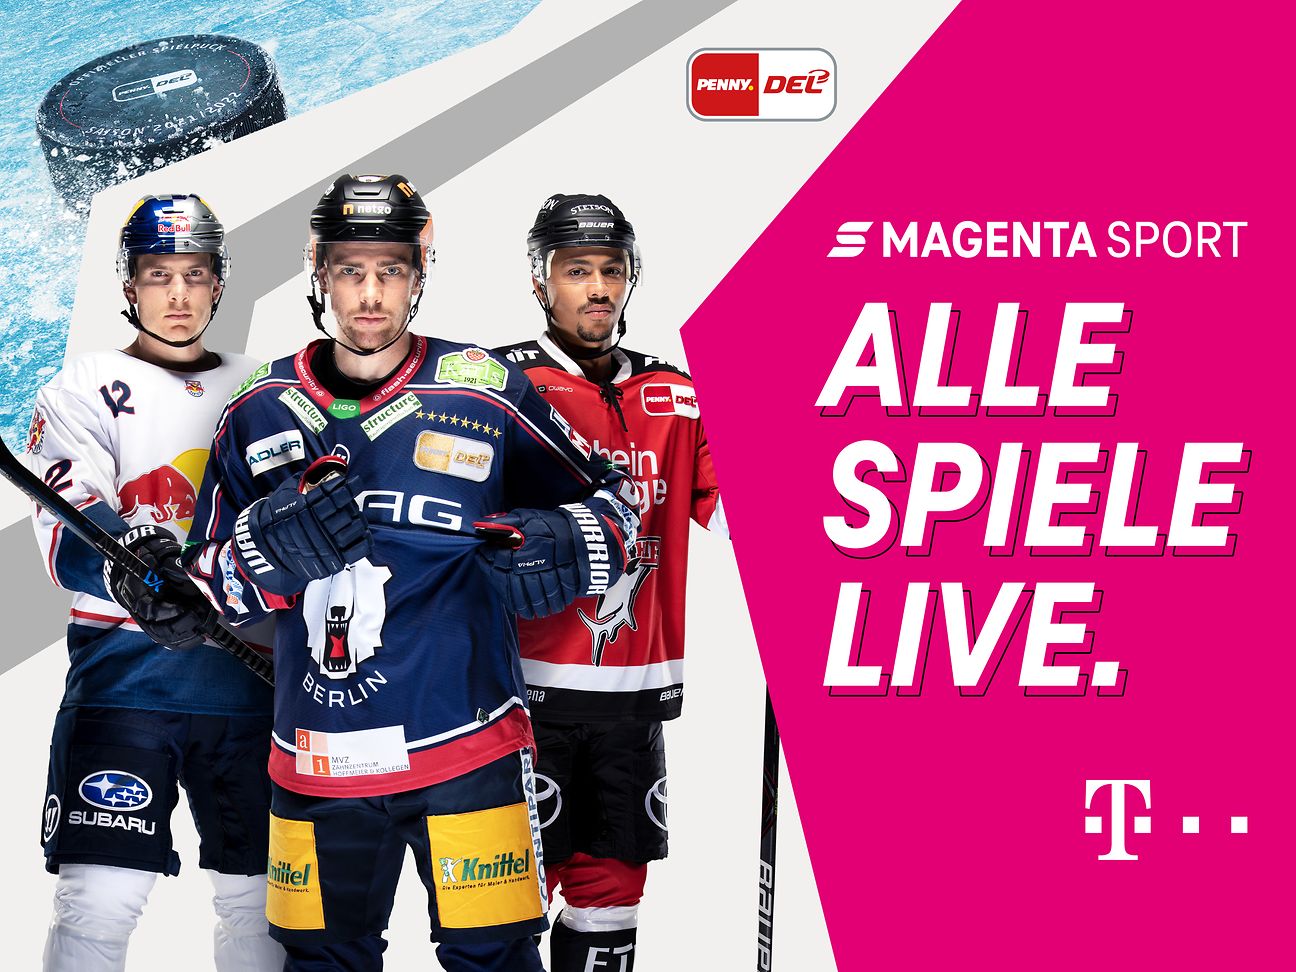 MagentaSport Mehr Eishockey geht nicht Deutsche Telekom